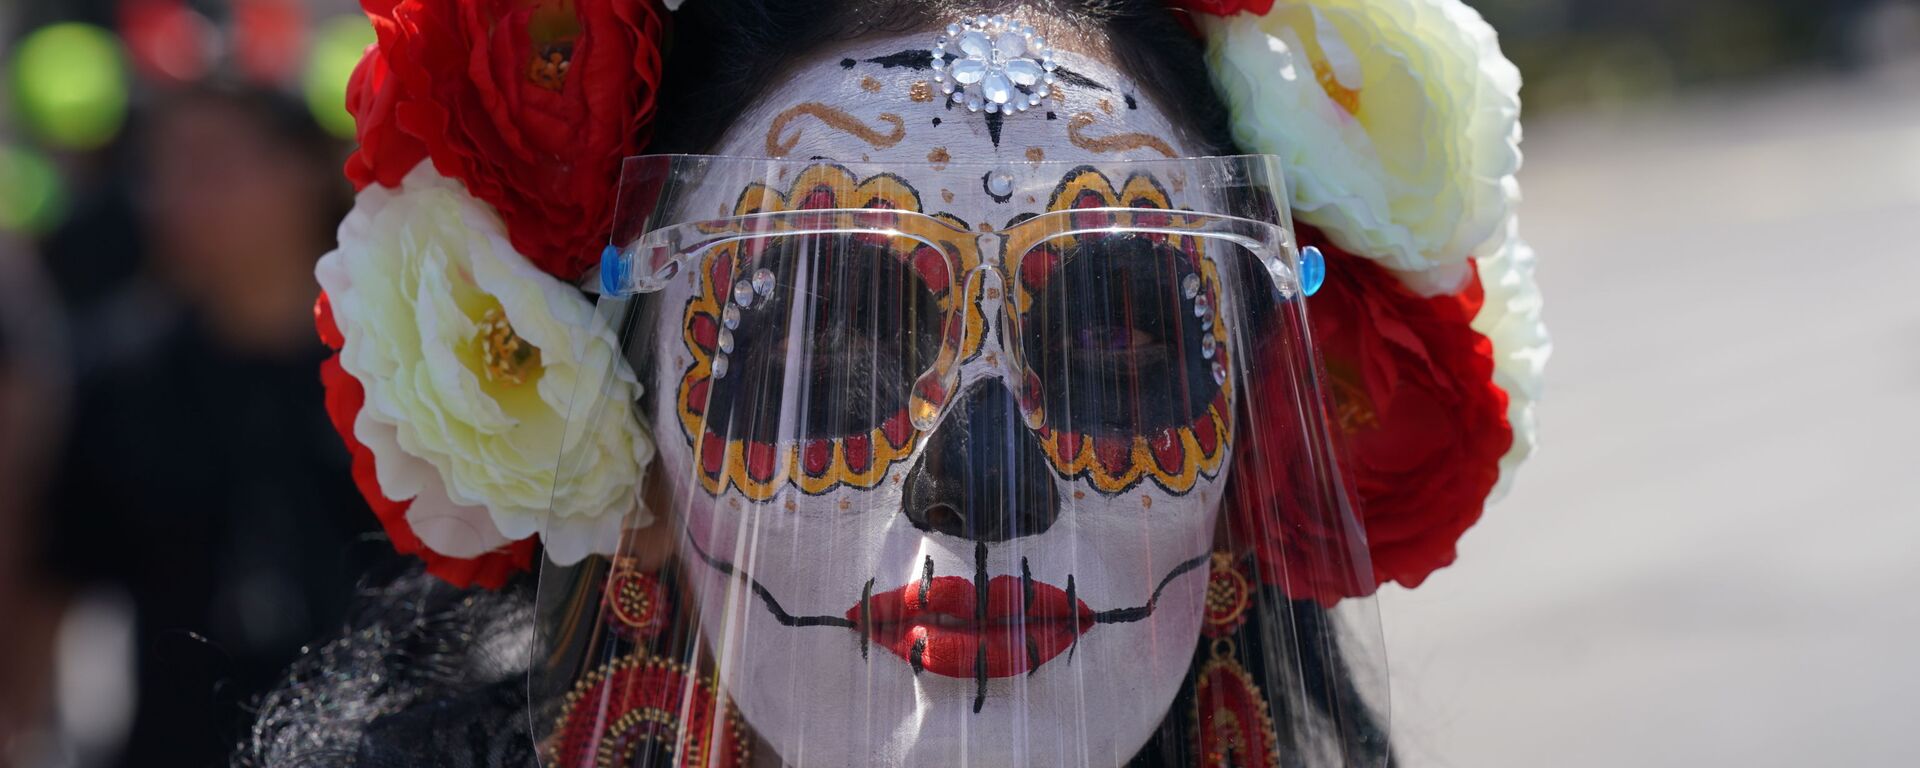 Девушка в гриме Катрины и в маске на праздновании Дня мертвых в Мексике  - Sputnik Mundo, 1920, 01.11.2021